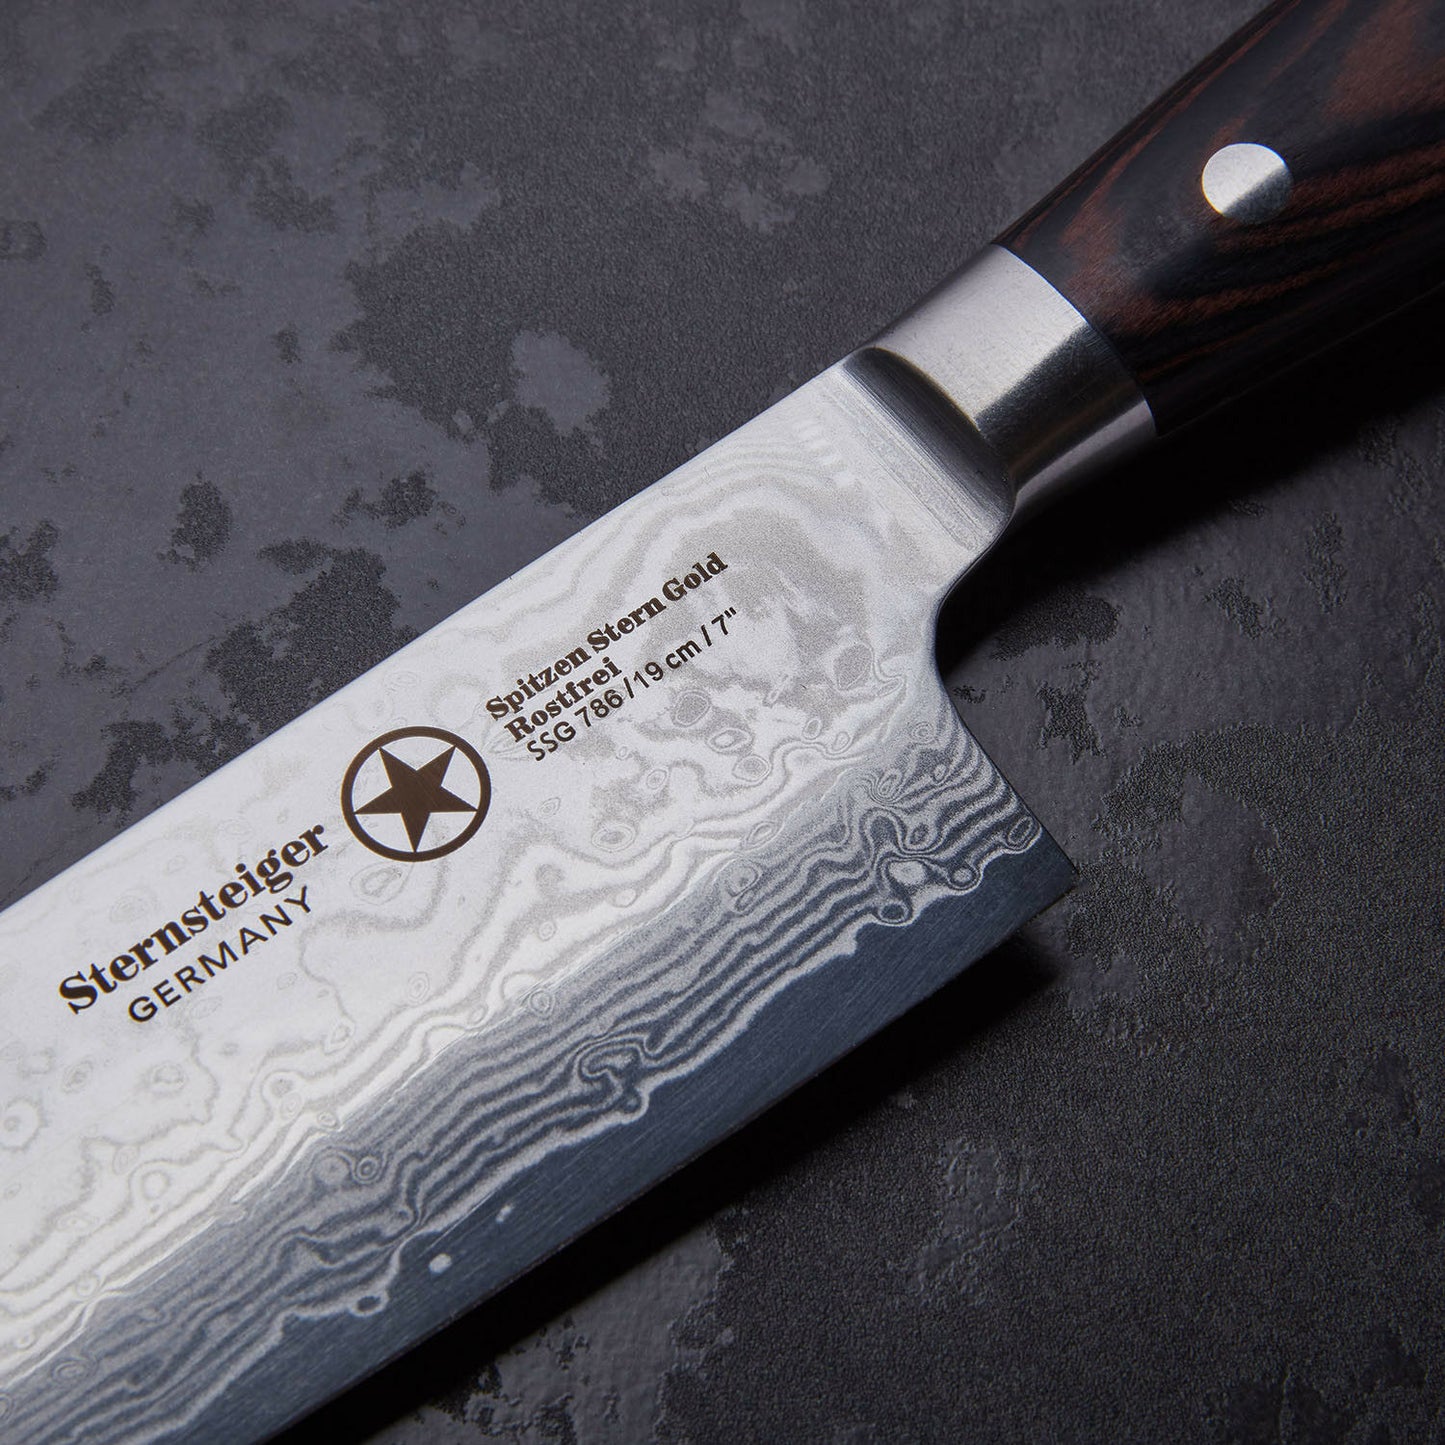 Sternsteiger | Damascus knife set of 7